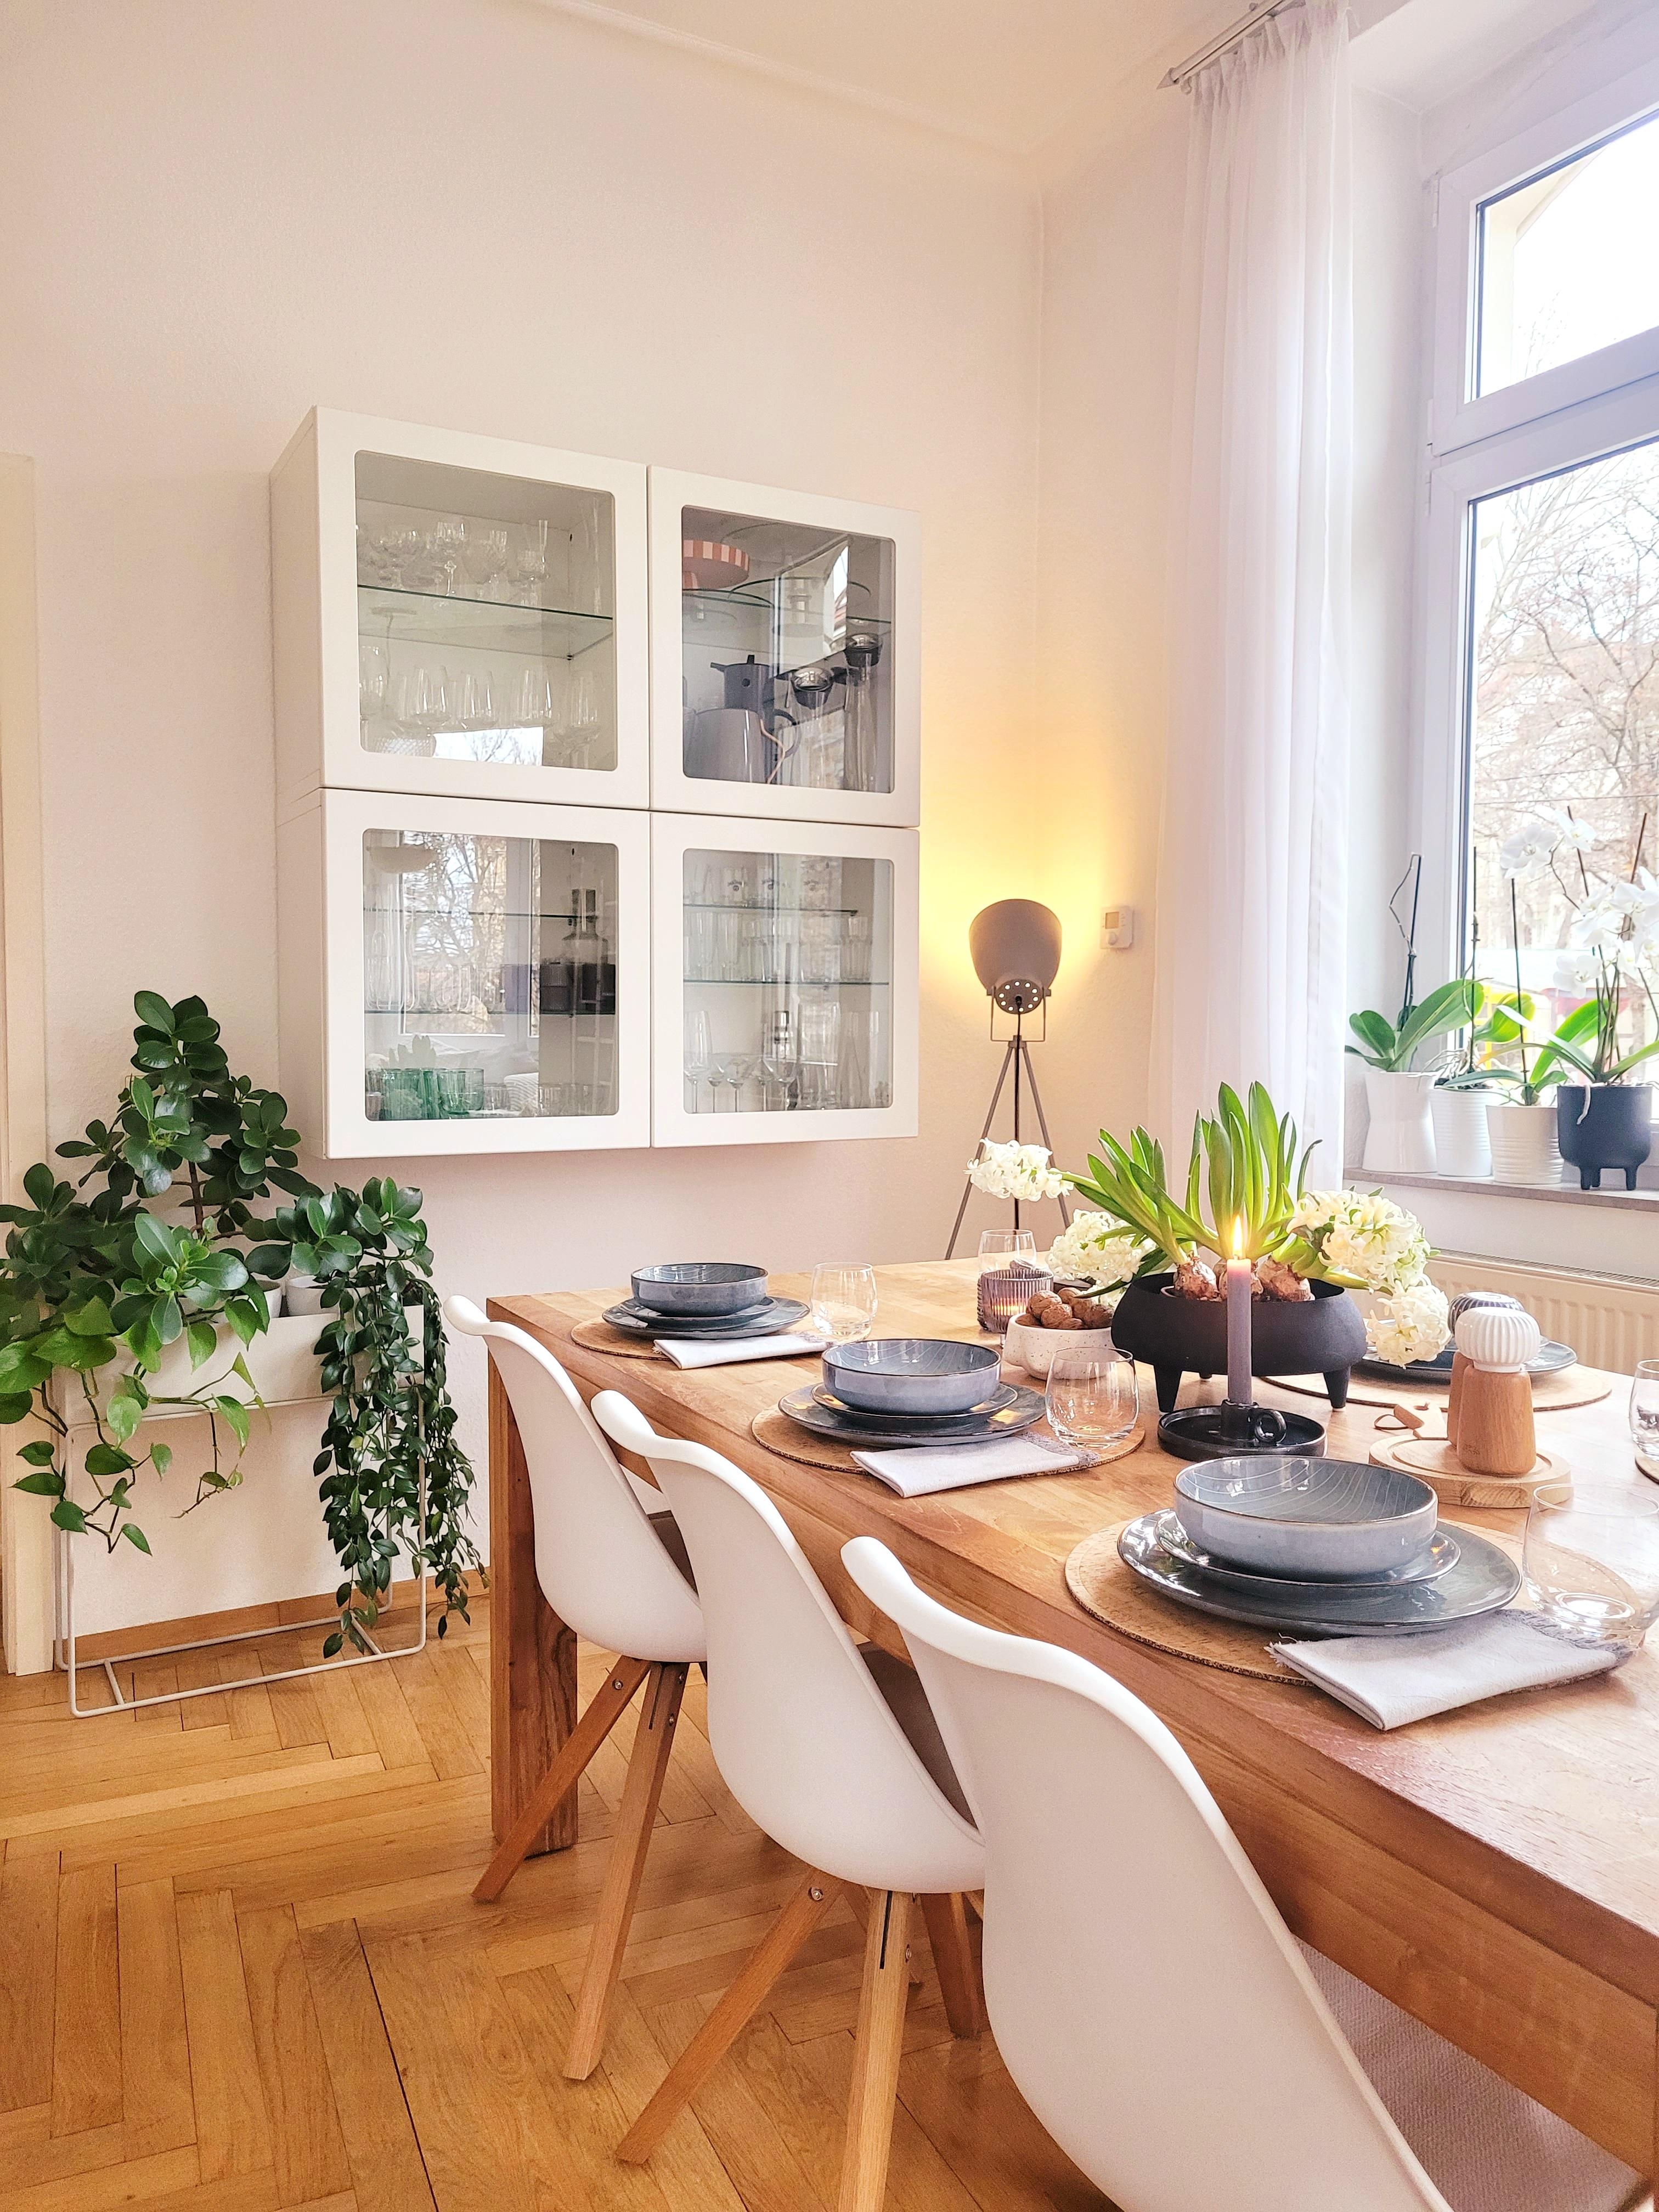 Ein tolles dinner Wochenende!
#Altbau 
#gedeckter Tisch 
#livingroom 
#esstisch 
#skandi 
